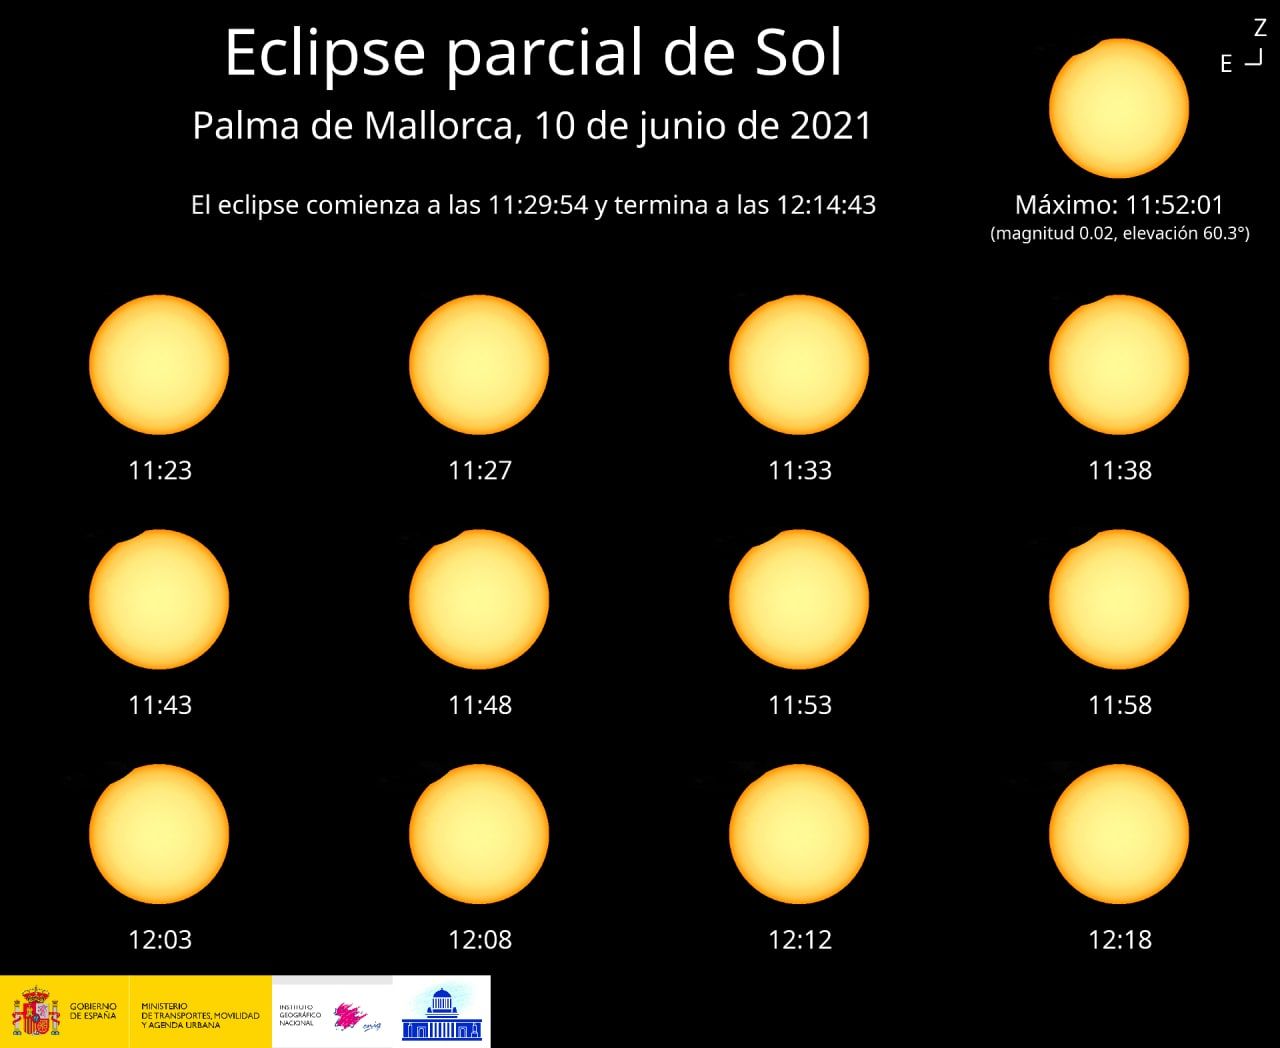 Eclipse parcial de sol, Palma, 10 de junio de 2021.